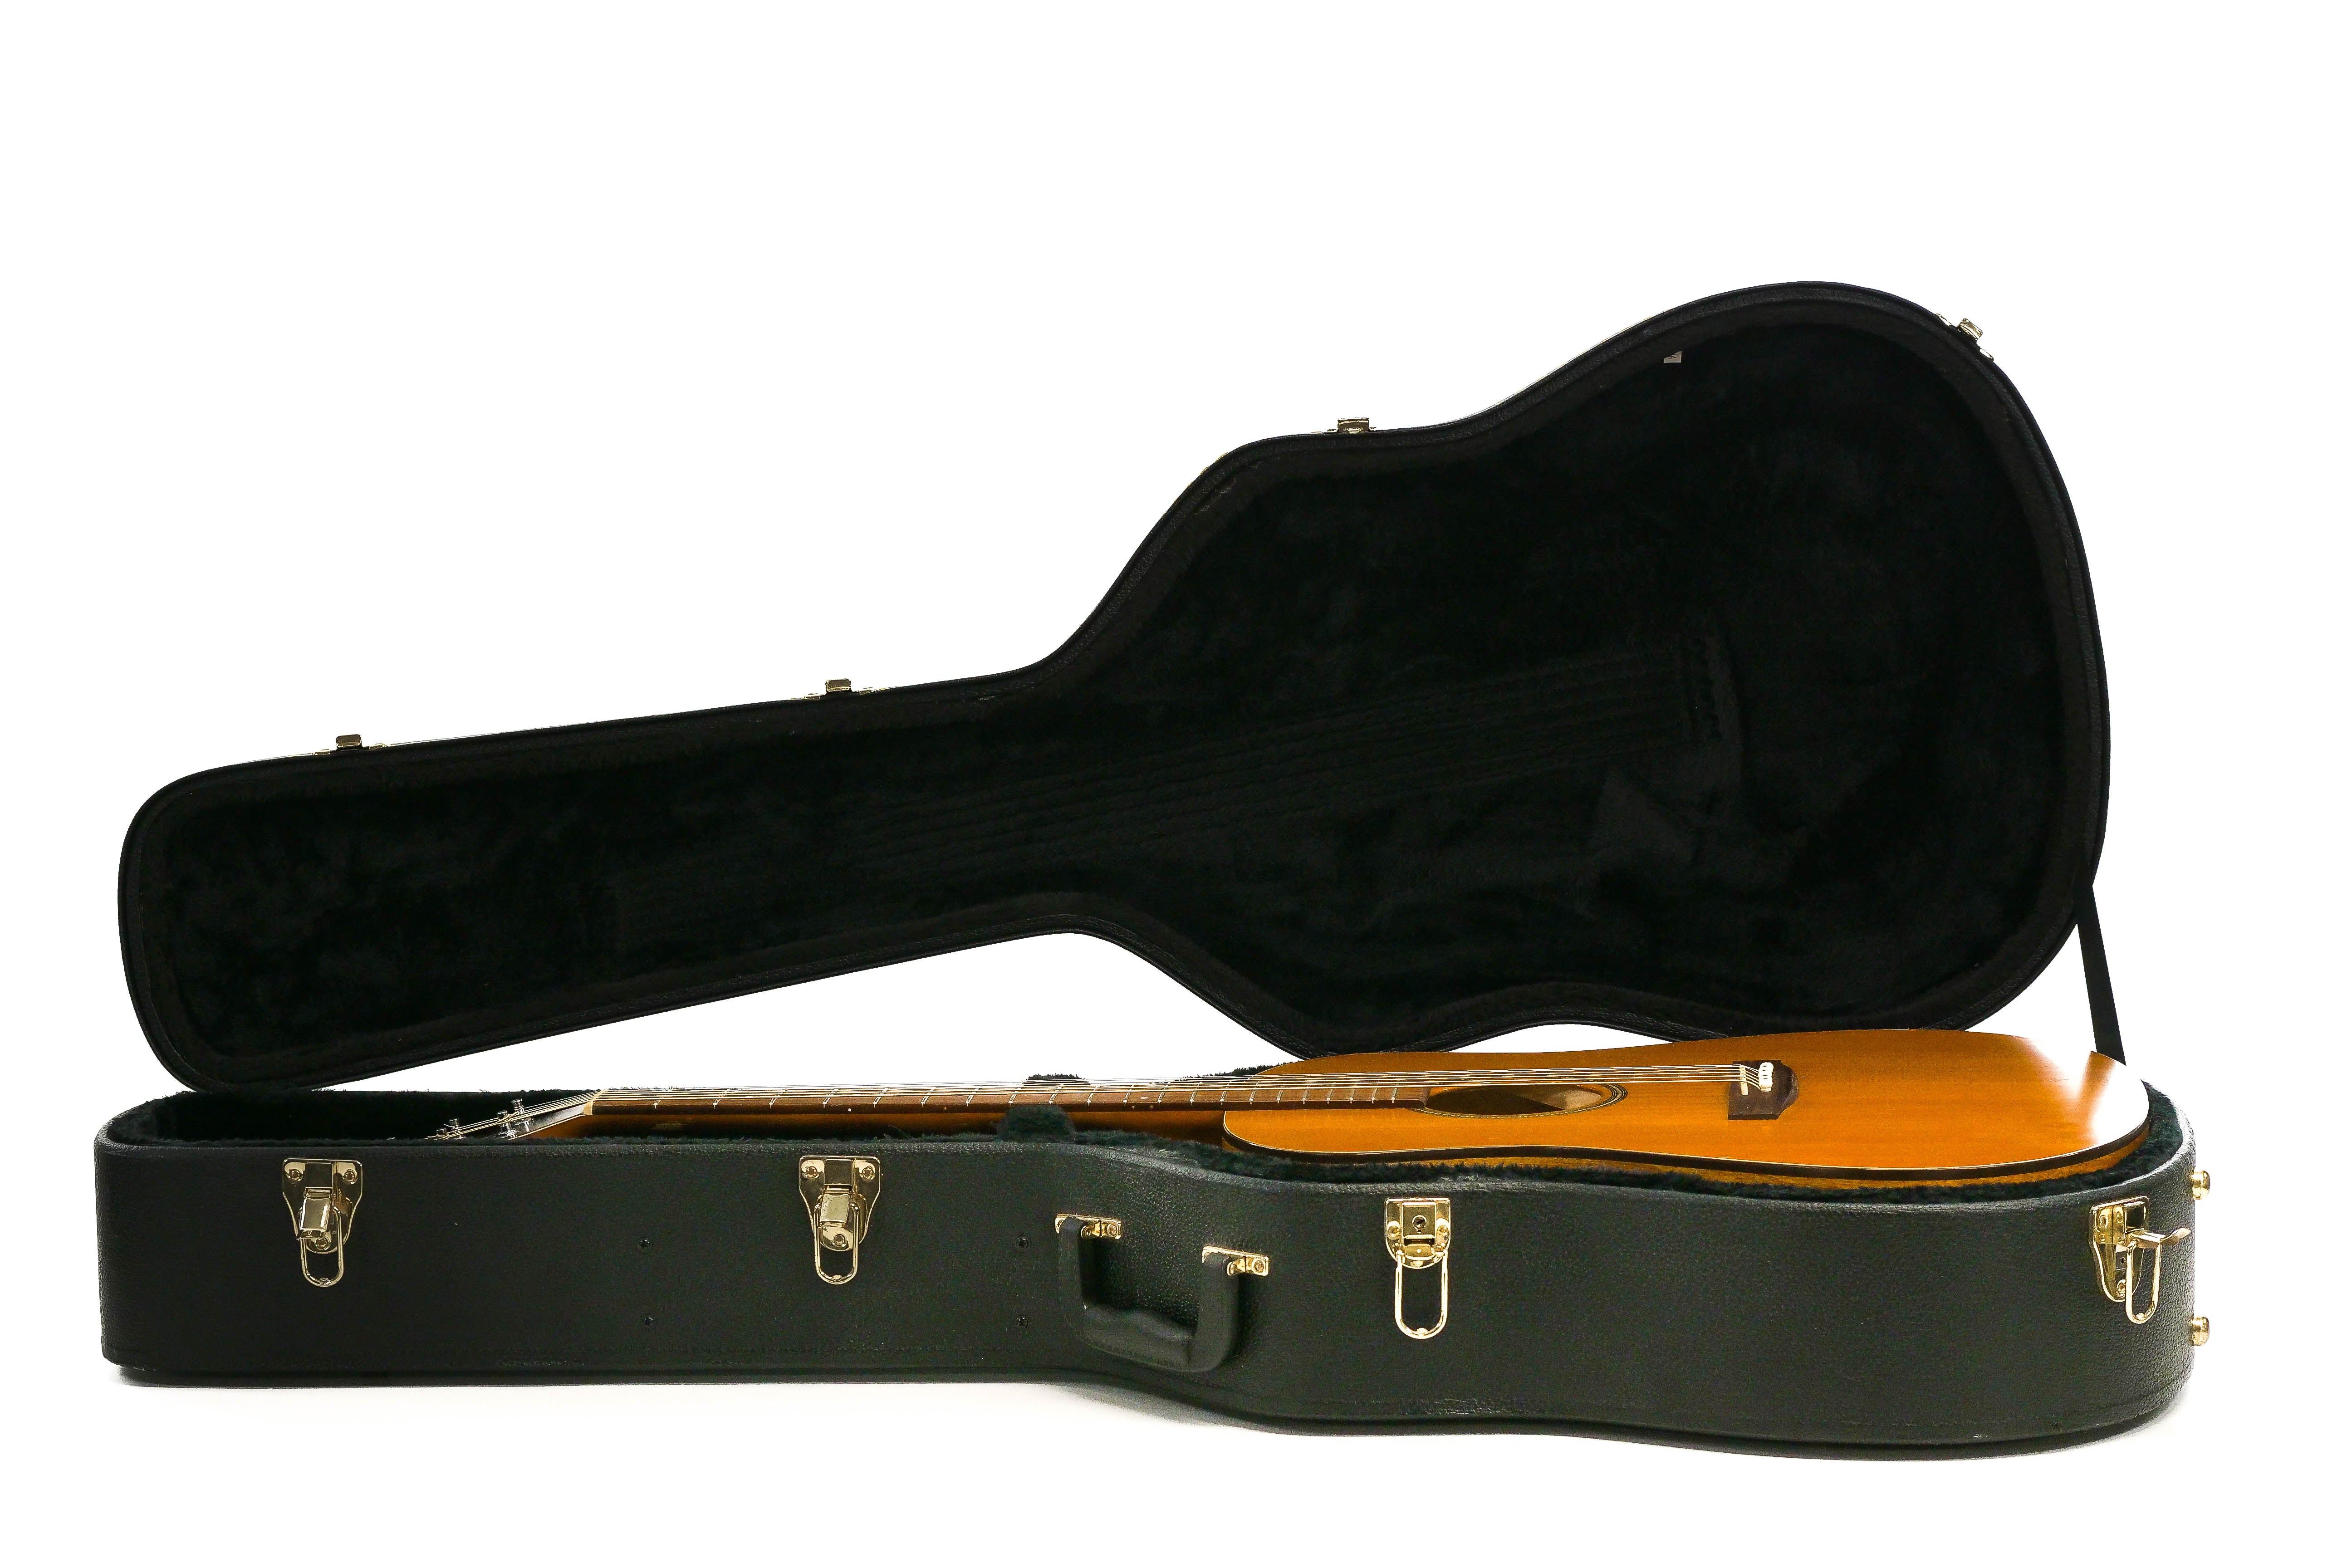 [Pre-Owned] 2008-2010 Seagull S6 Original Acoustic Guitar "Maku"